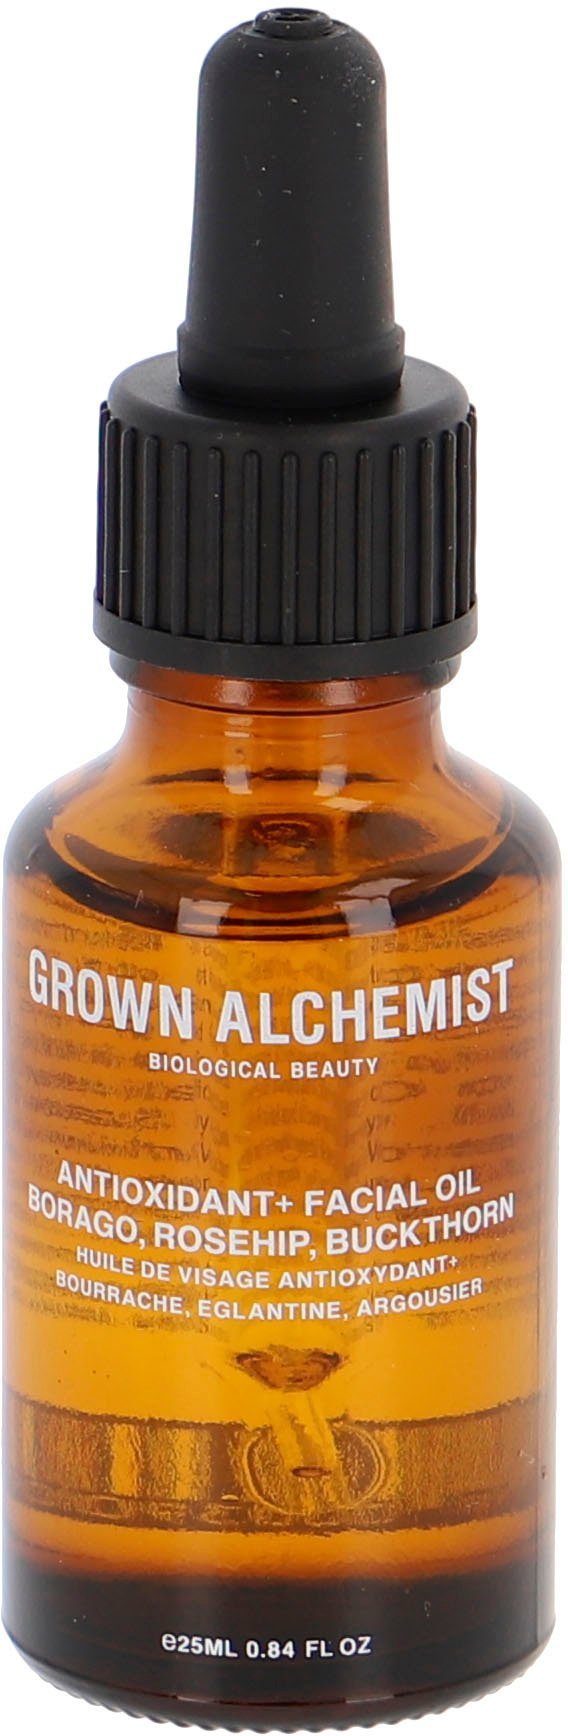 GROWN ALCHEMIST Gesichtsöl Anti-Oxidant+ Facial Oil, Borago, Rosehip, Buckthorn